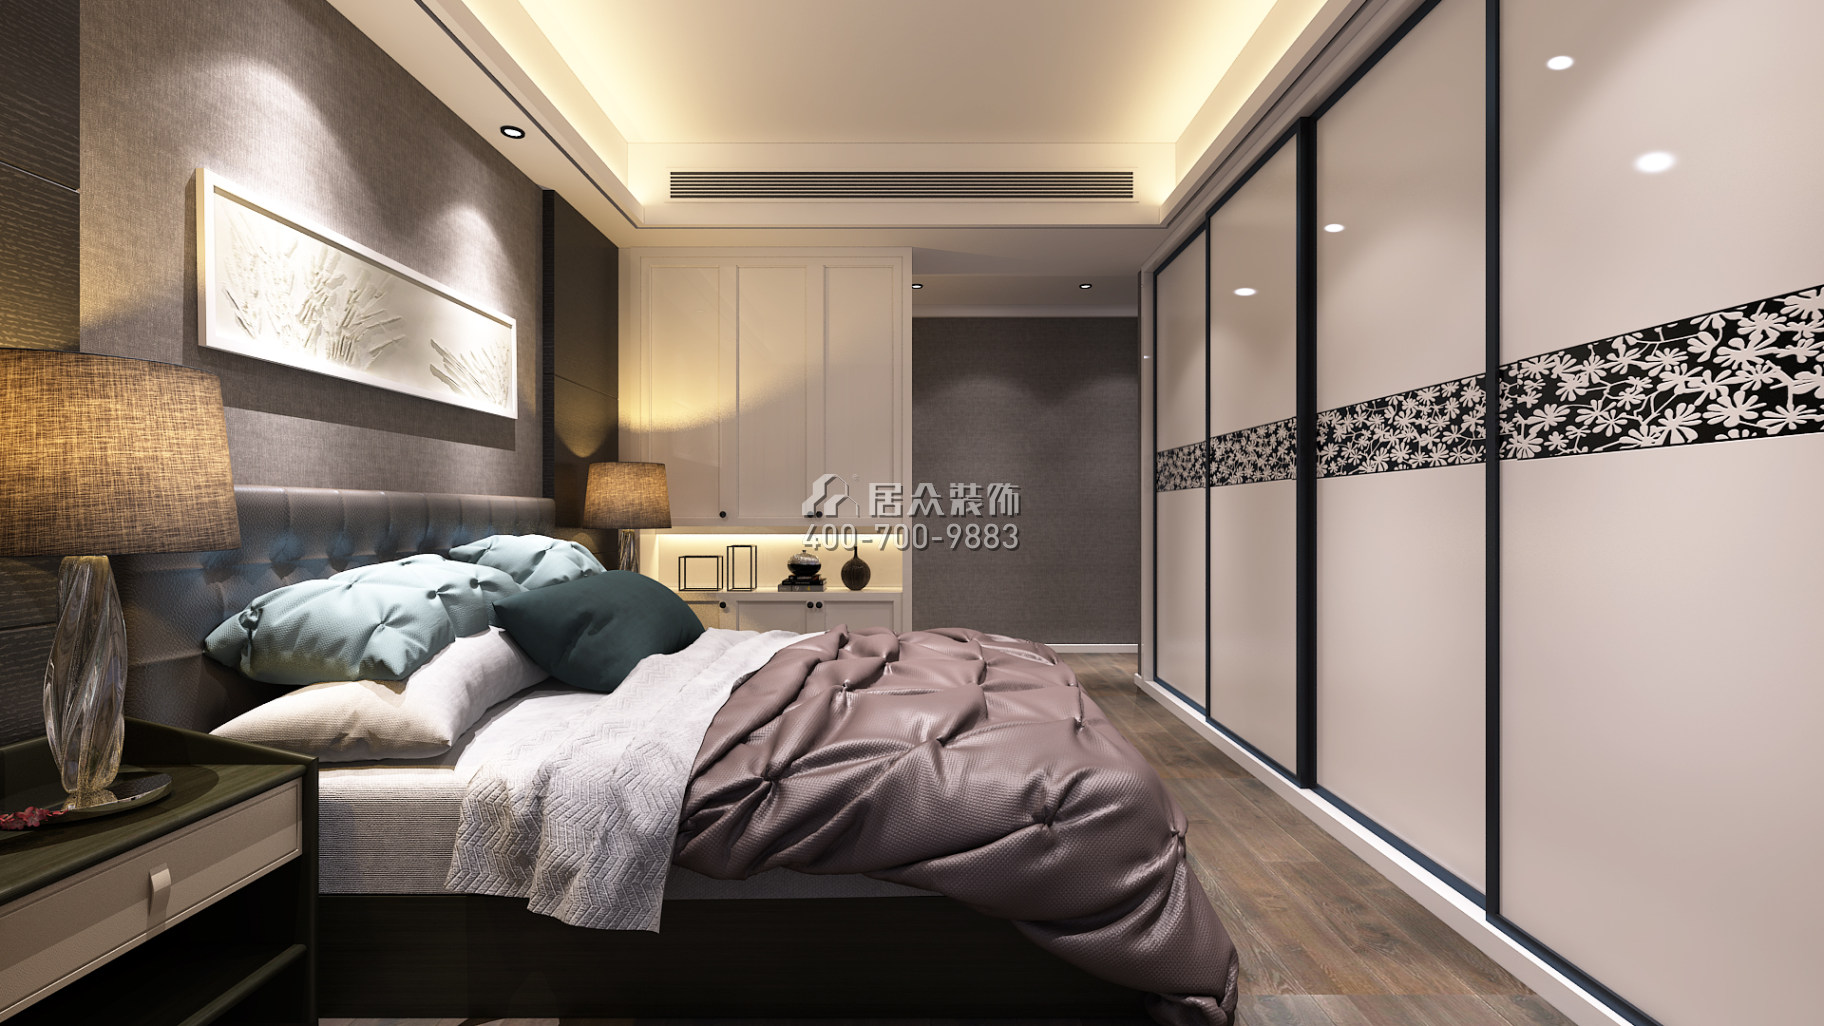 天源星城145平方米現代簡約風格平層戶型臥室裝修效果圖